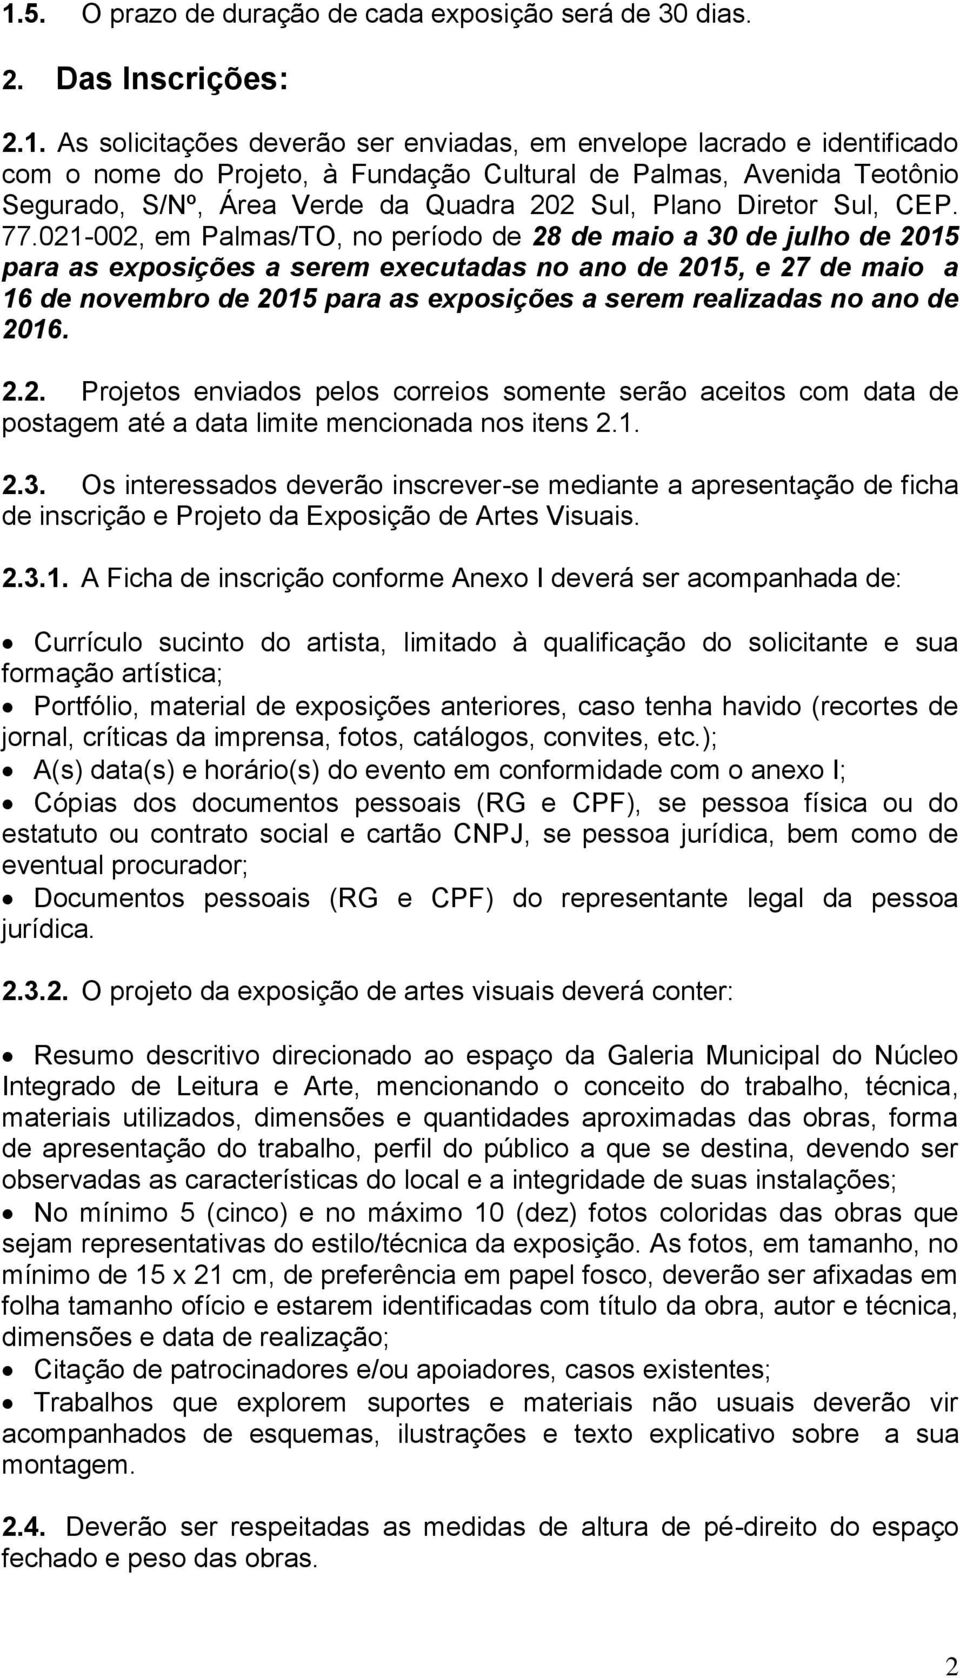 021-002, em Palmas/TO, no período de 28 de maio a 30 de julho de 2015 para as exposições a serem executadas no ano de 2015, e 27 de maio a 16 de novembro de 2015 para as exposições a serem realizadas